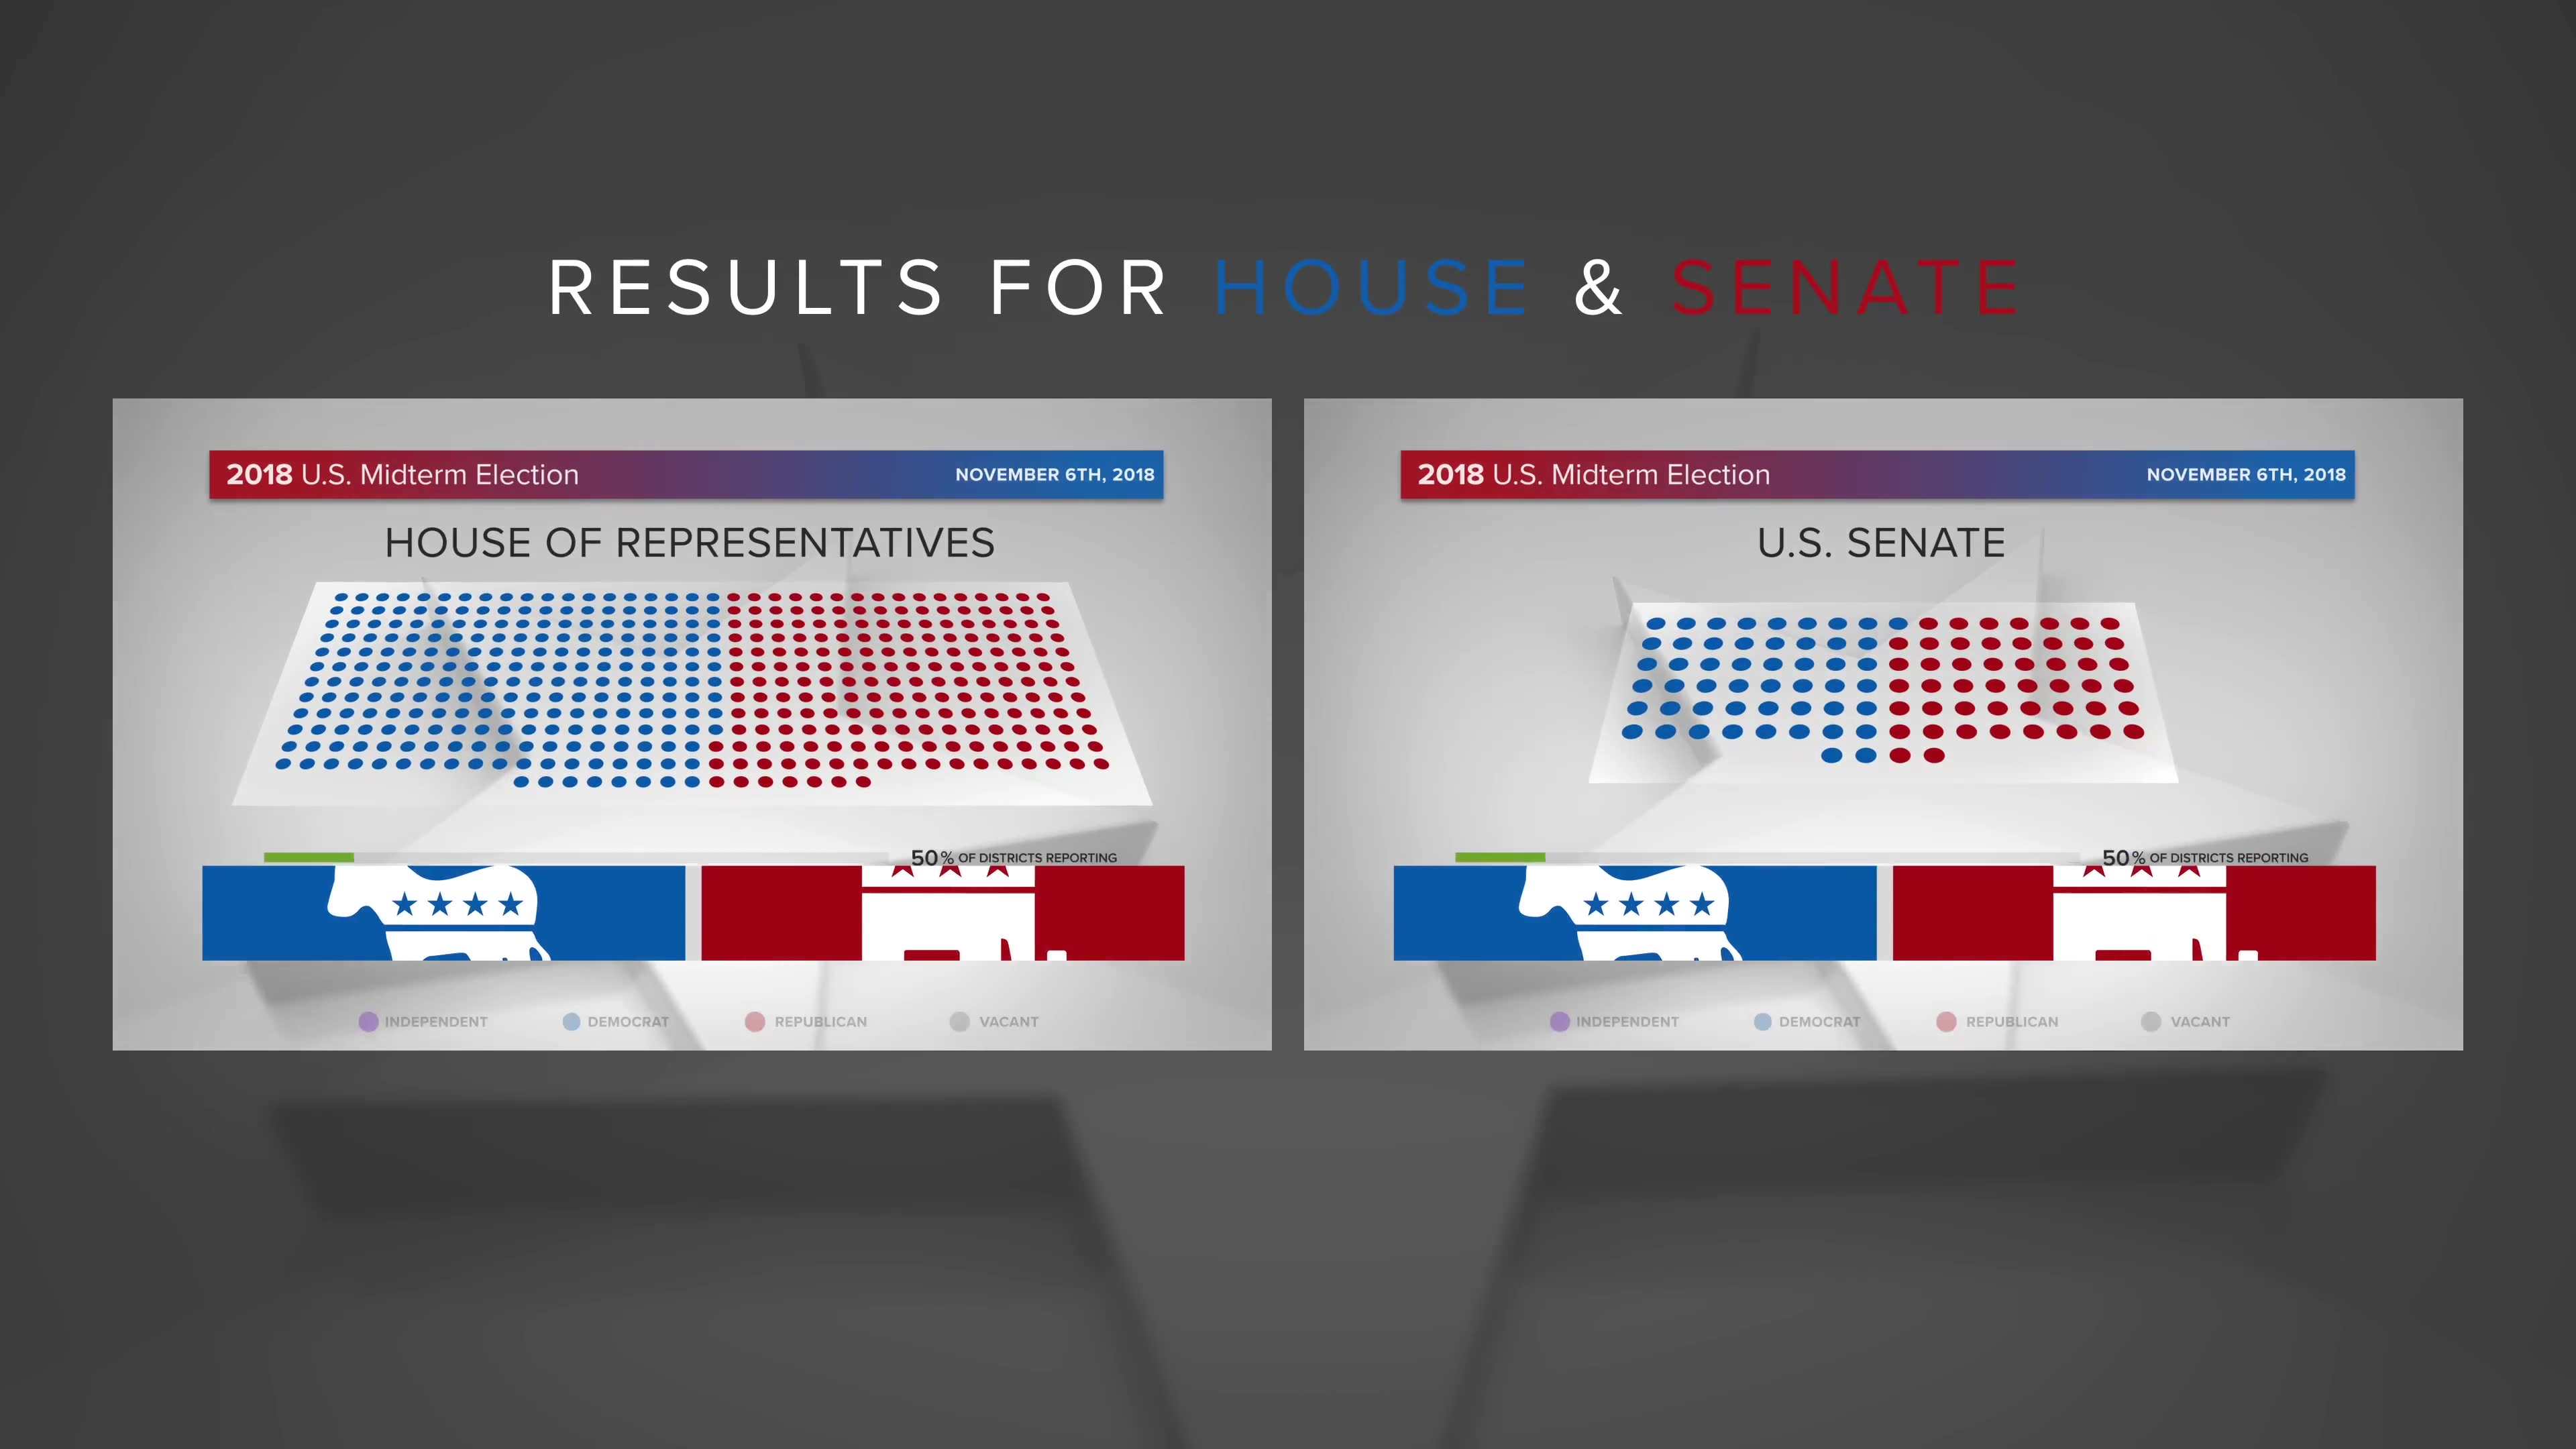 Midterm Election Elements Congress & Senate | MOGRT for Premiere Pro - Download Videohive 22771897